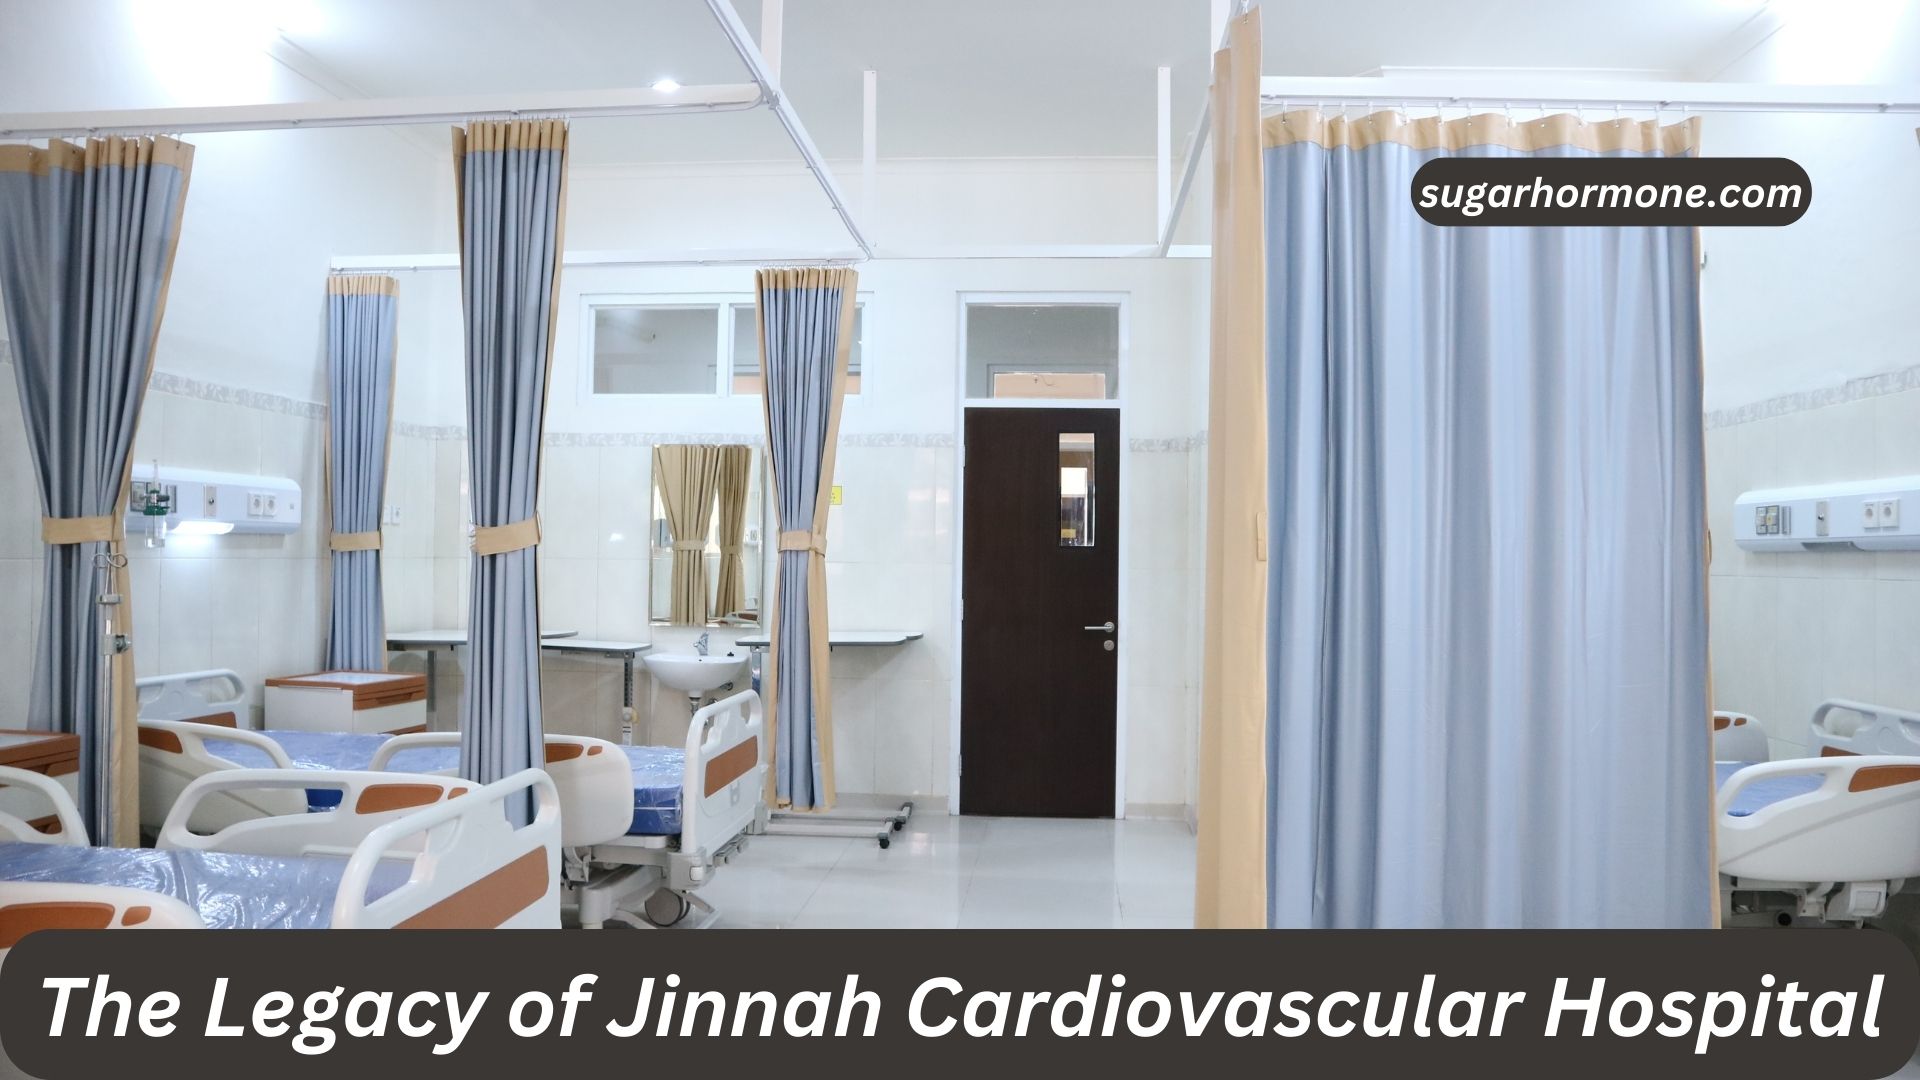 The Legacy of Jinnah Cardiovascular Hospital